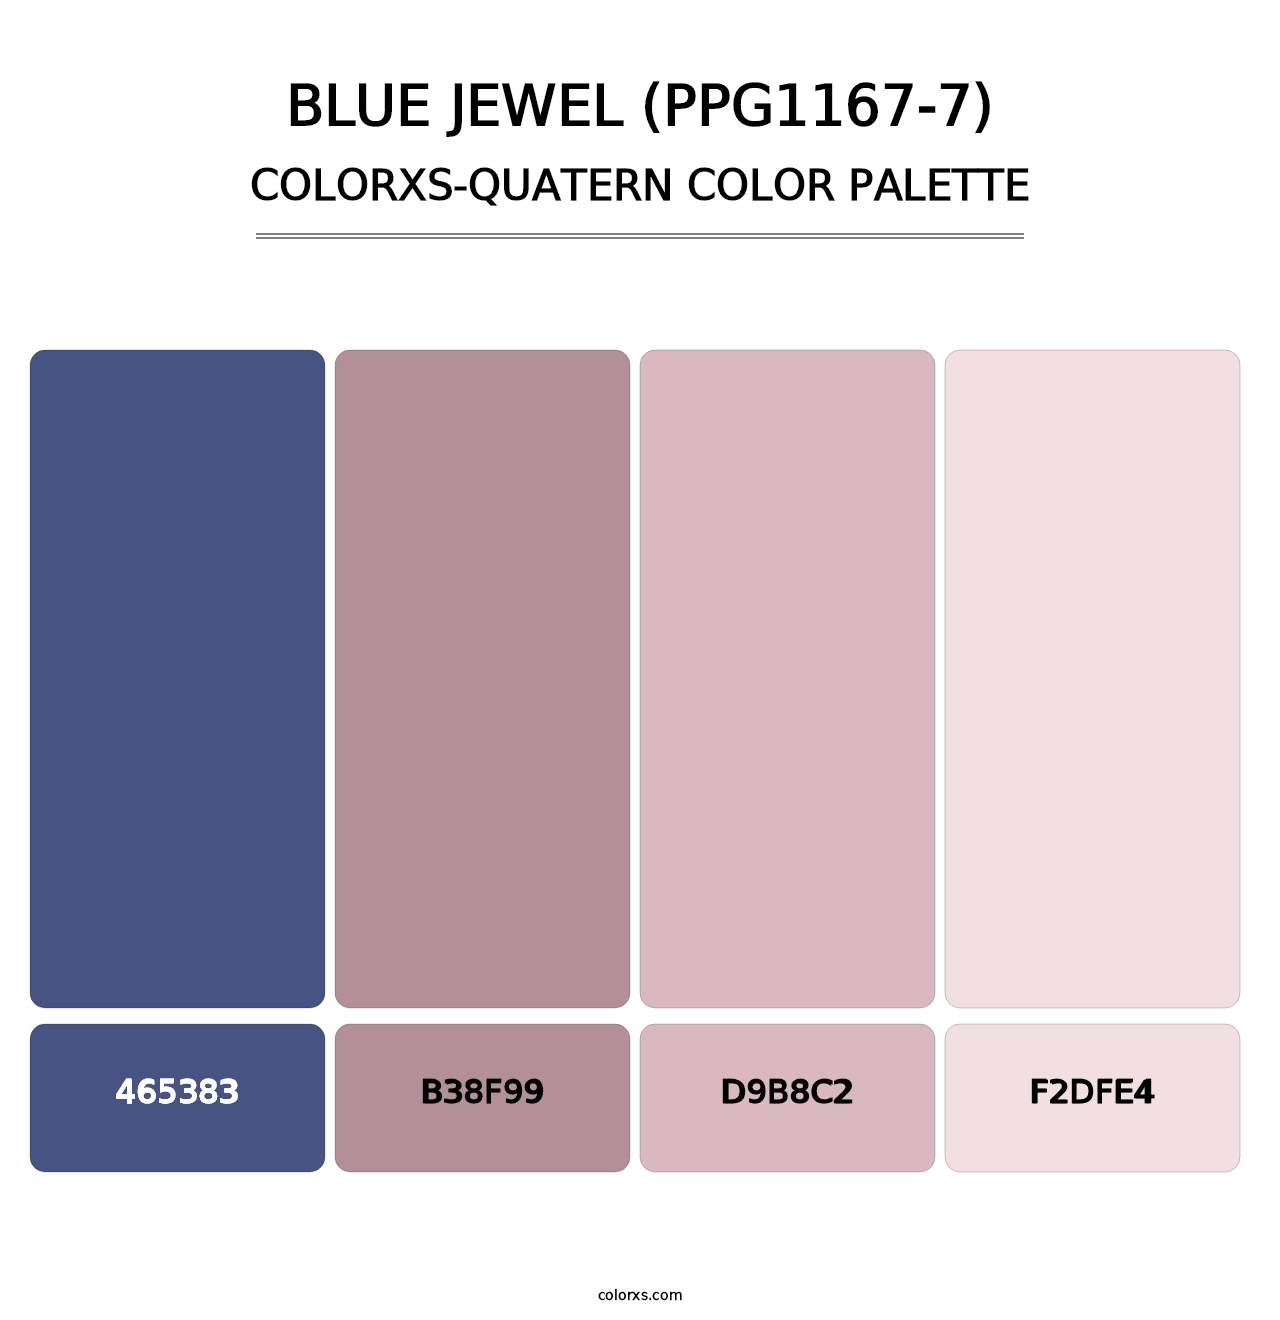 Blue Jewel (PPG1167-7) - Colorxs Quatern Palette